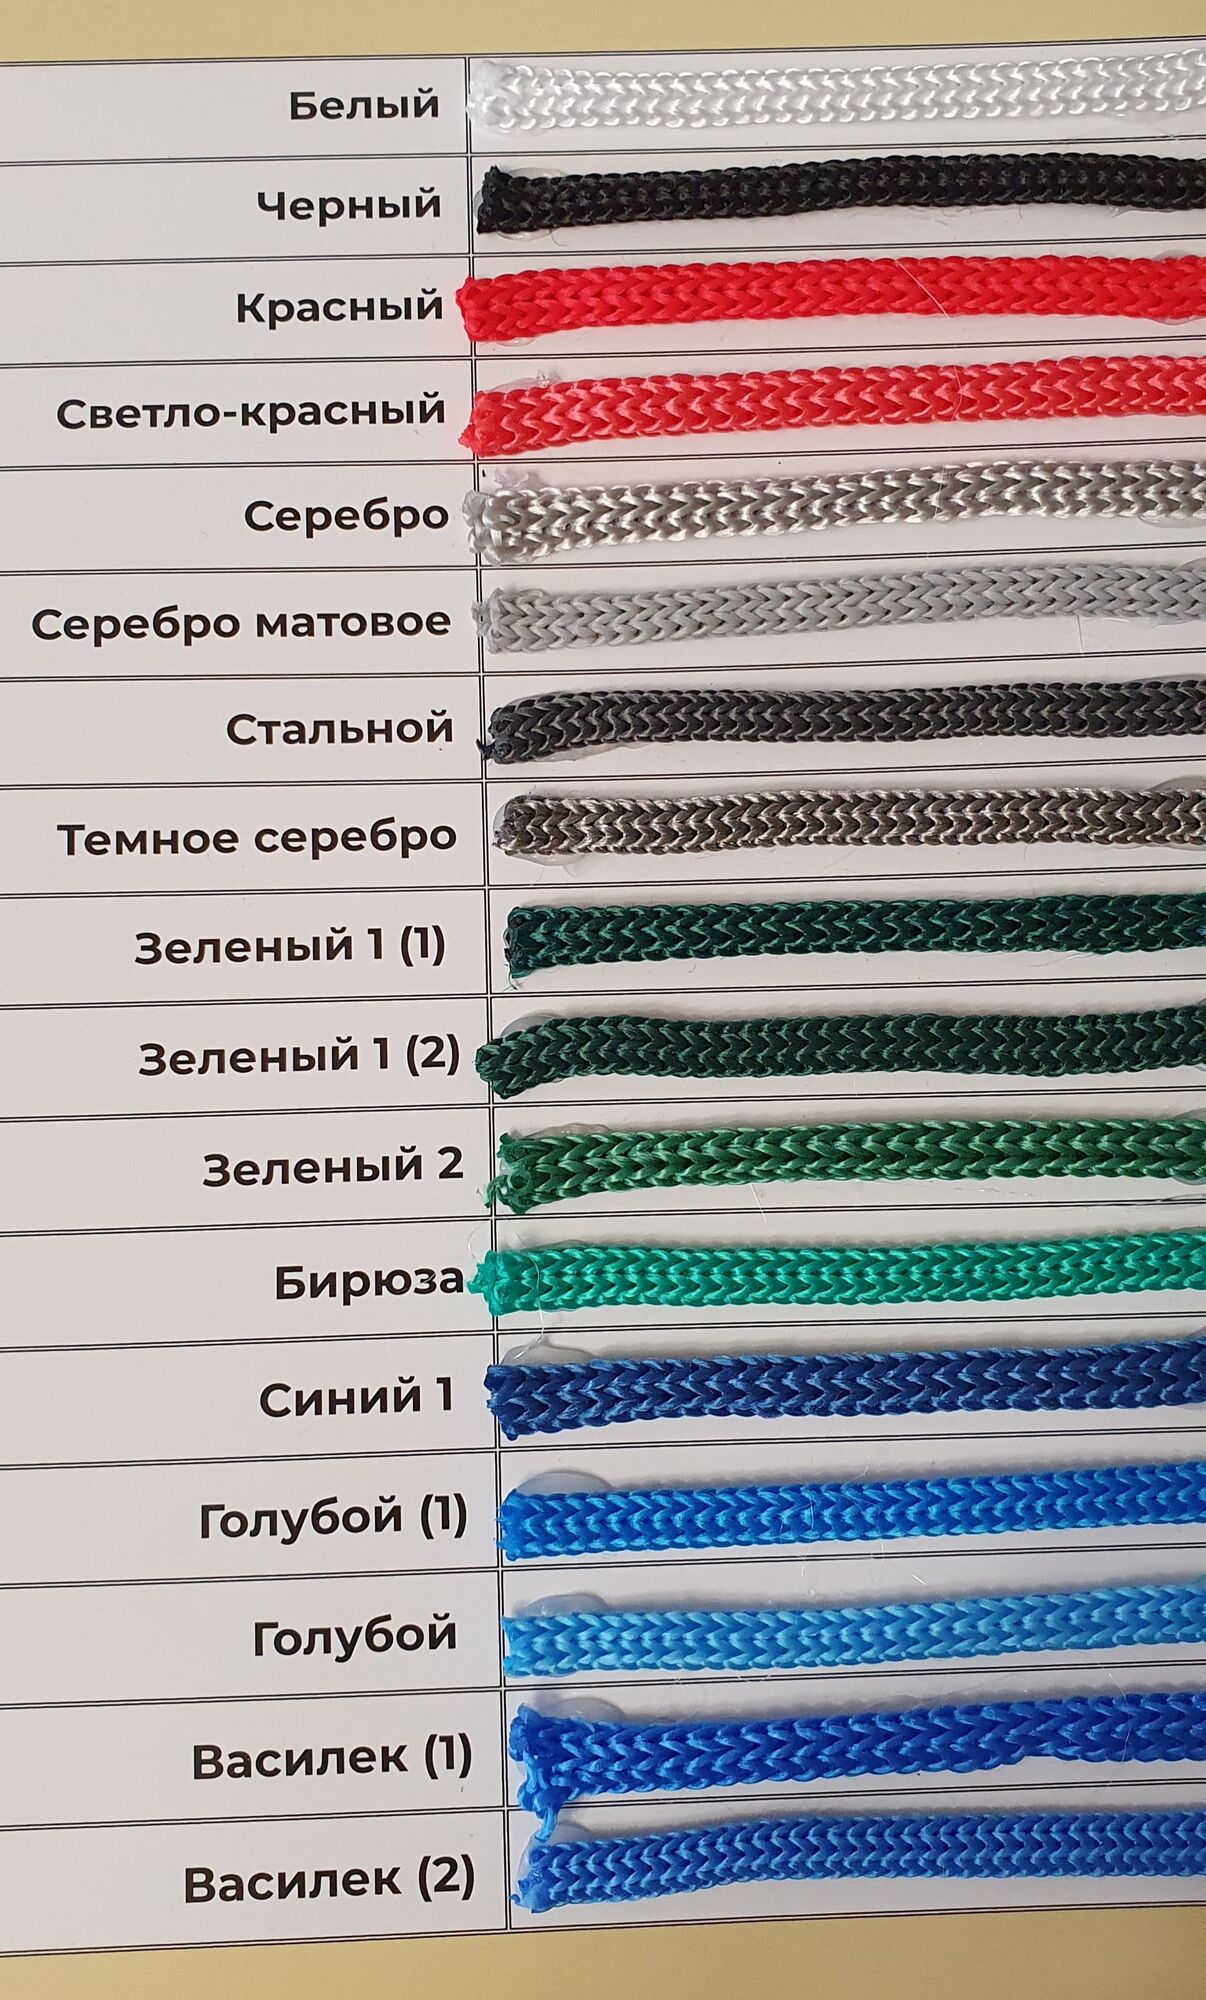 карта цветов полипропиленового шнура 2